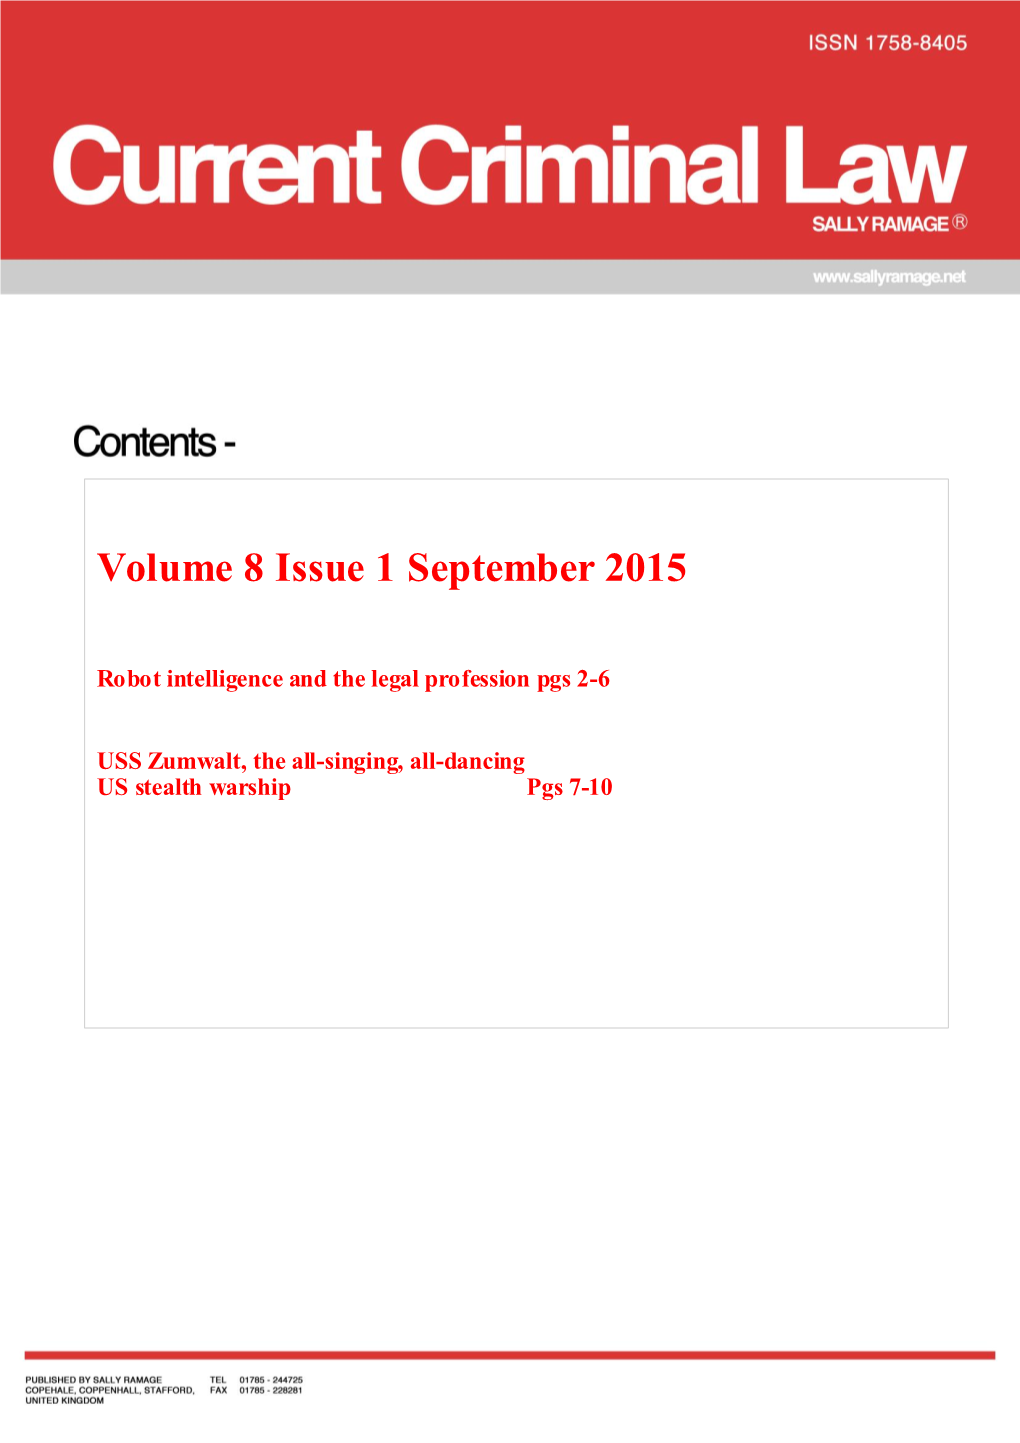 Volume 8 Issue 1 September 2015